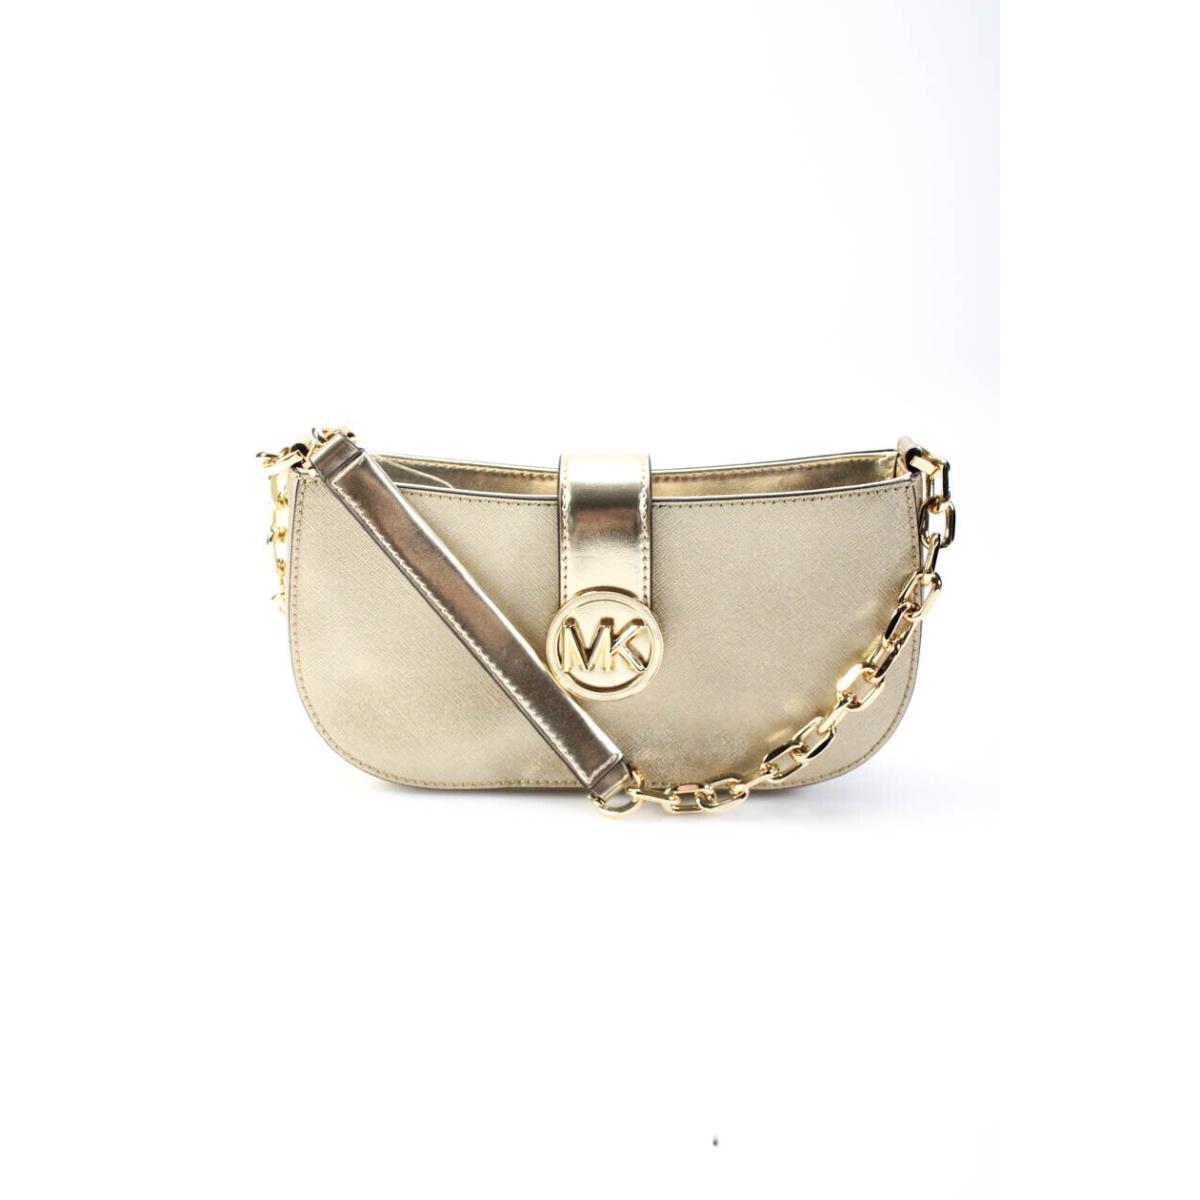 Kors Womens Gold Strap Chain Small Pouchette Shoulder Handbag